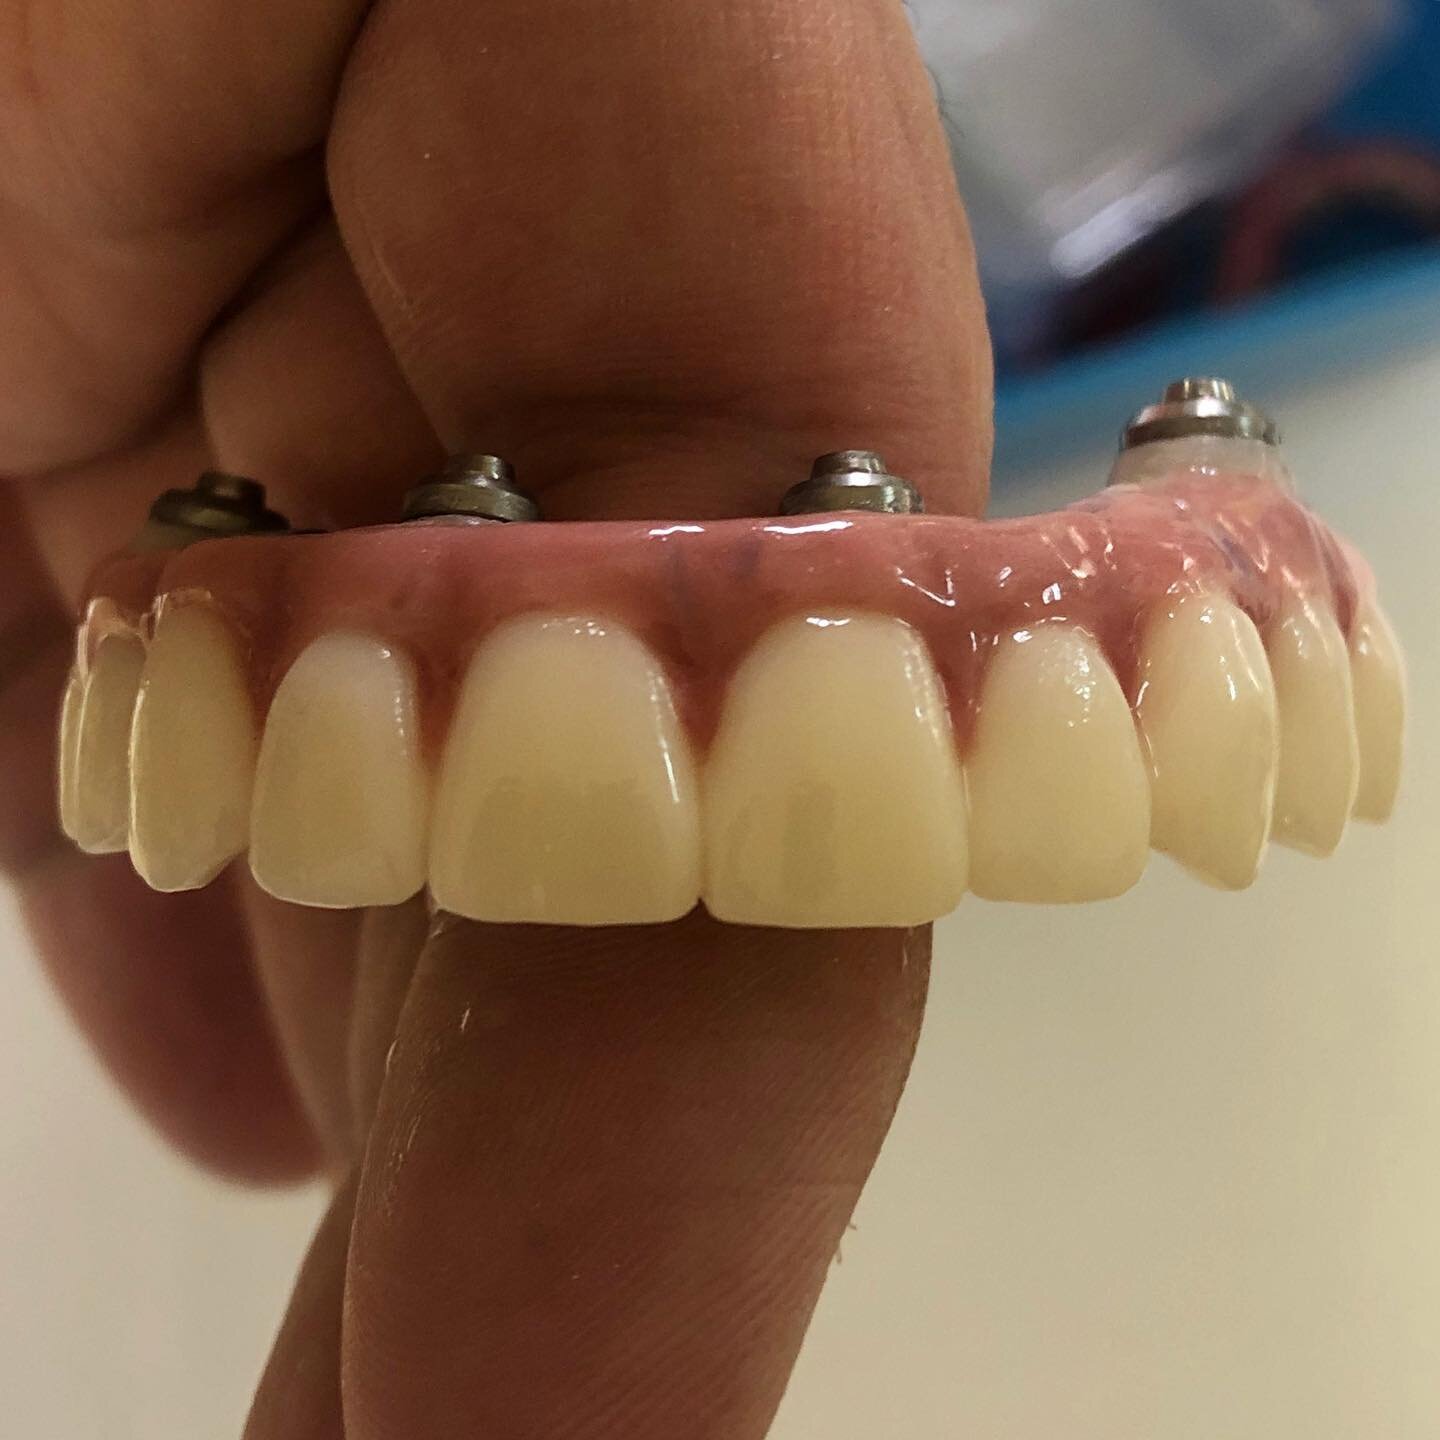 Our signature hybrid ✅ #dentalimplantsurgery #dentalimplants #dentalbridge #digitaldentistry #dentallab #dentaldesignsmile #beatifulsmile #teeth #fullmouthreconstruction